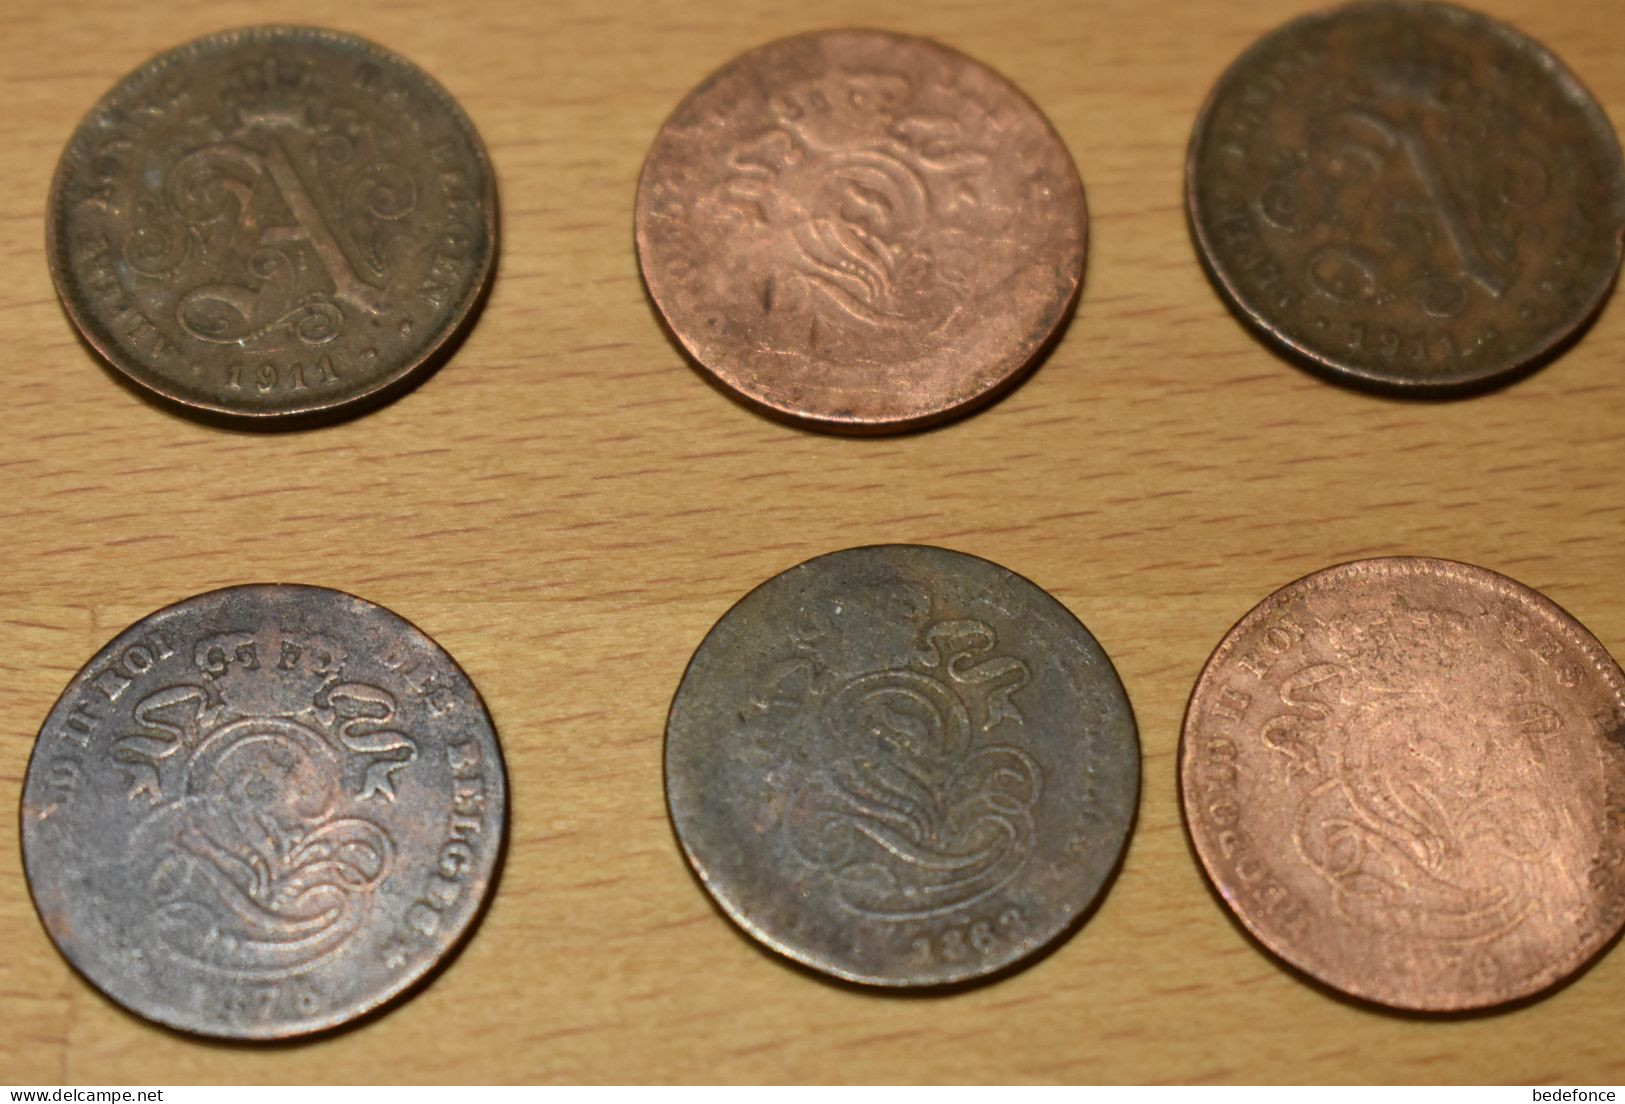 Monnaie - Belgique - lot de 24 pièces de 2 cents - de 1862 à 1919